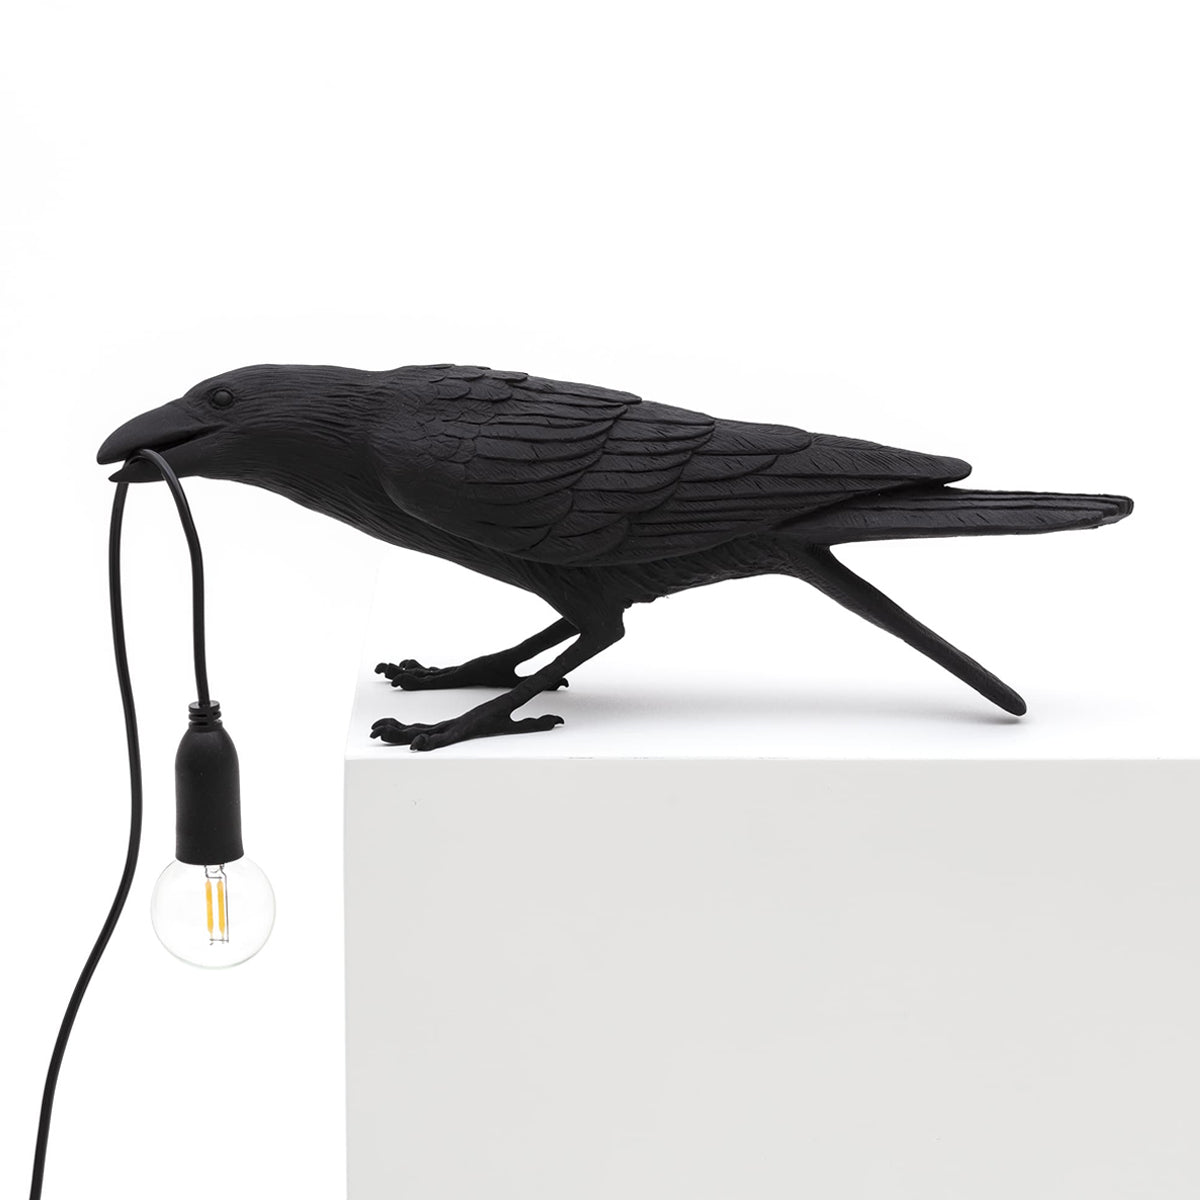 Bird Lamp Black Playing